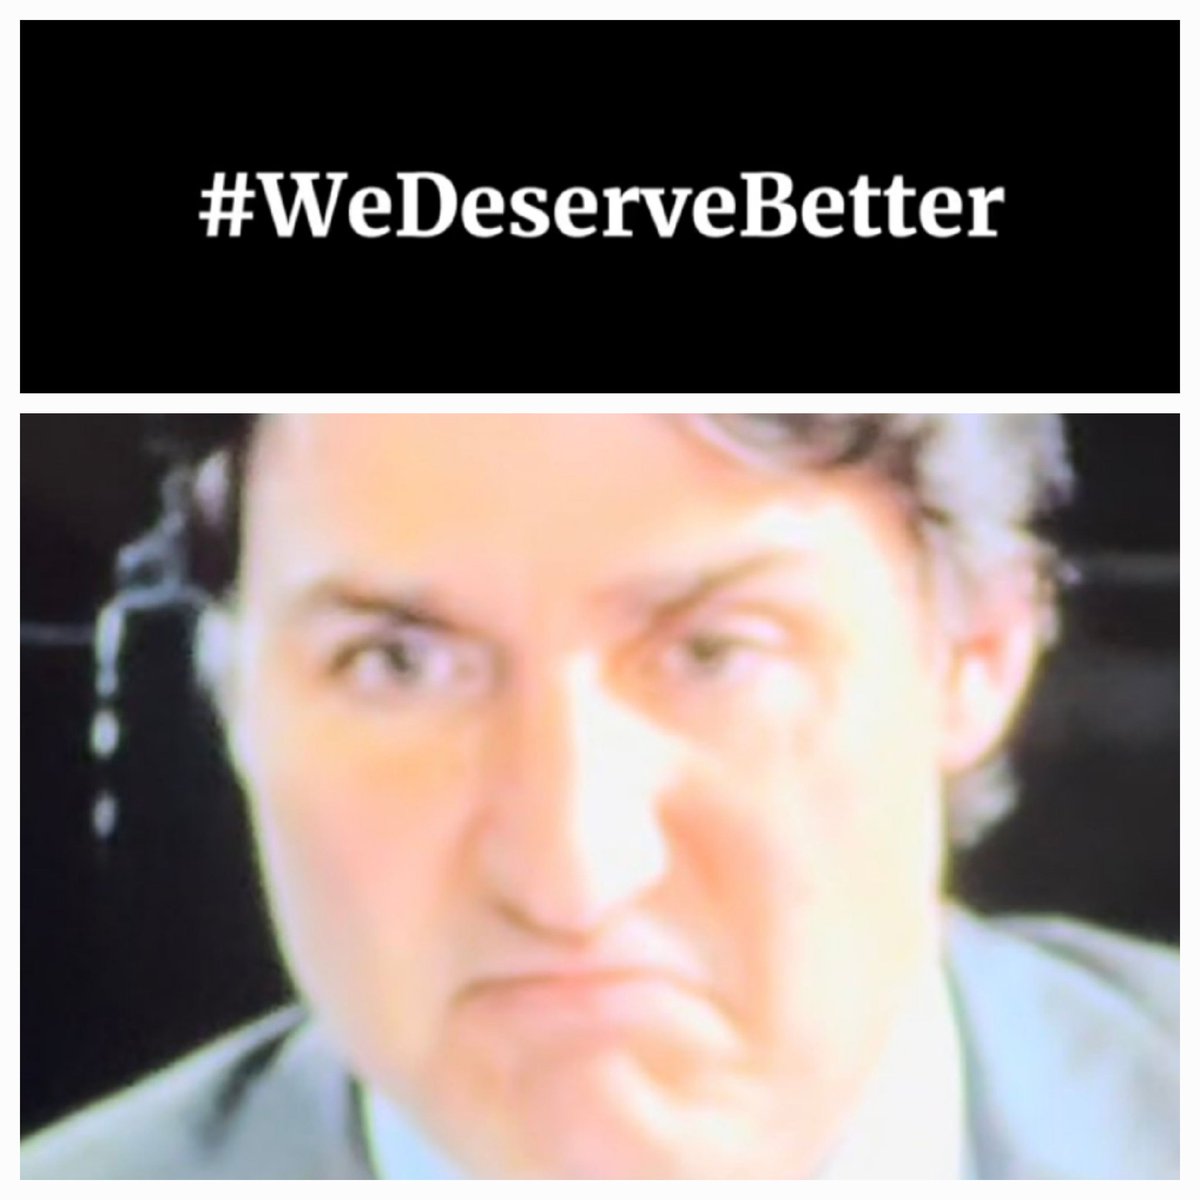 Ya ... We do ....

#WeDeserveBetter